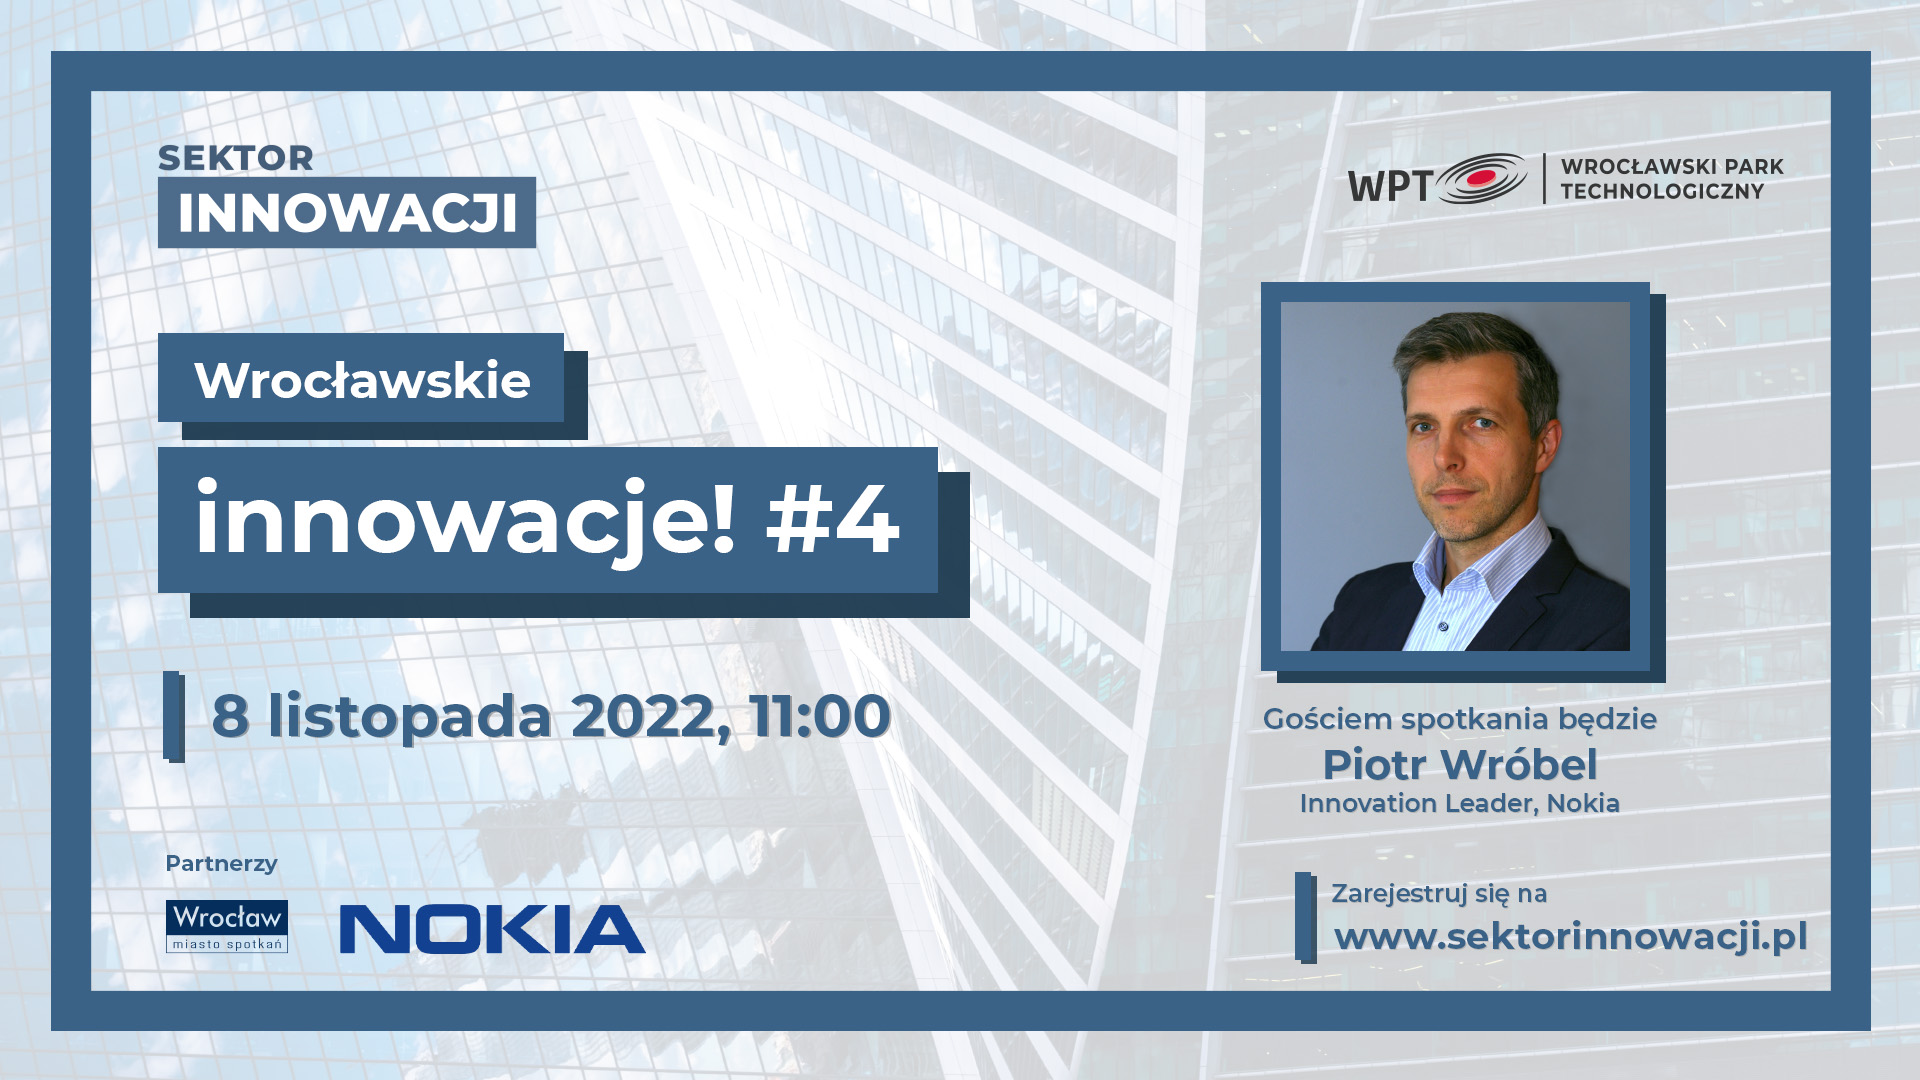 Wrocławskie innowacje #4: NOKIA, czyli globalny lider we Wrocławiu!